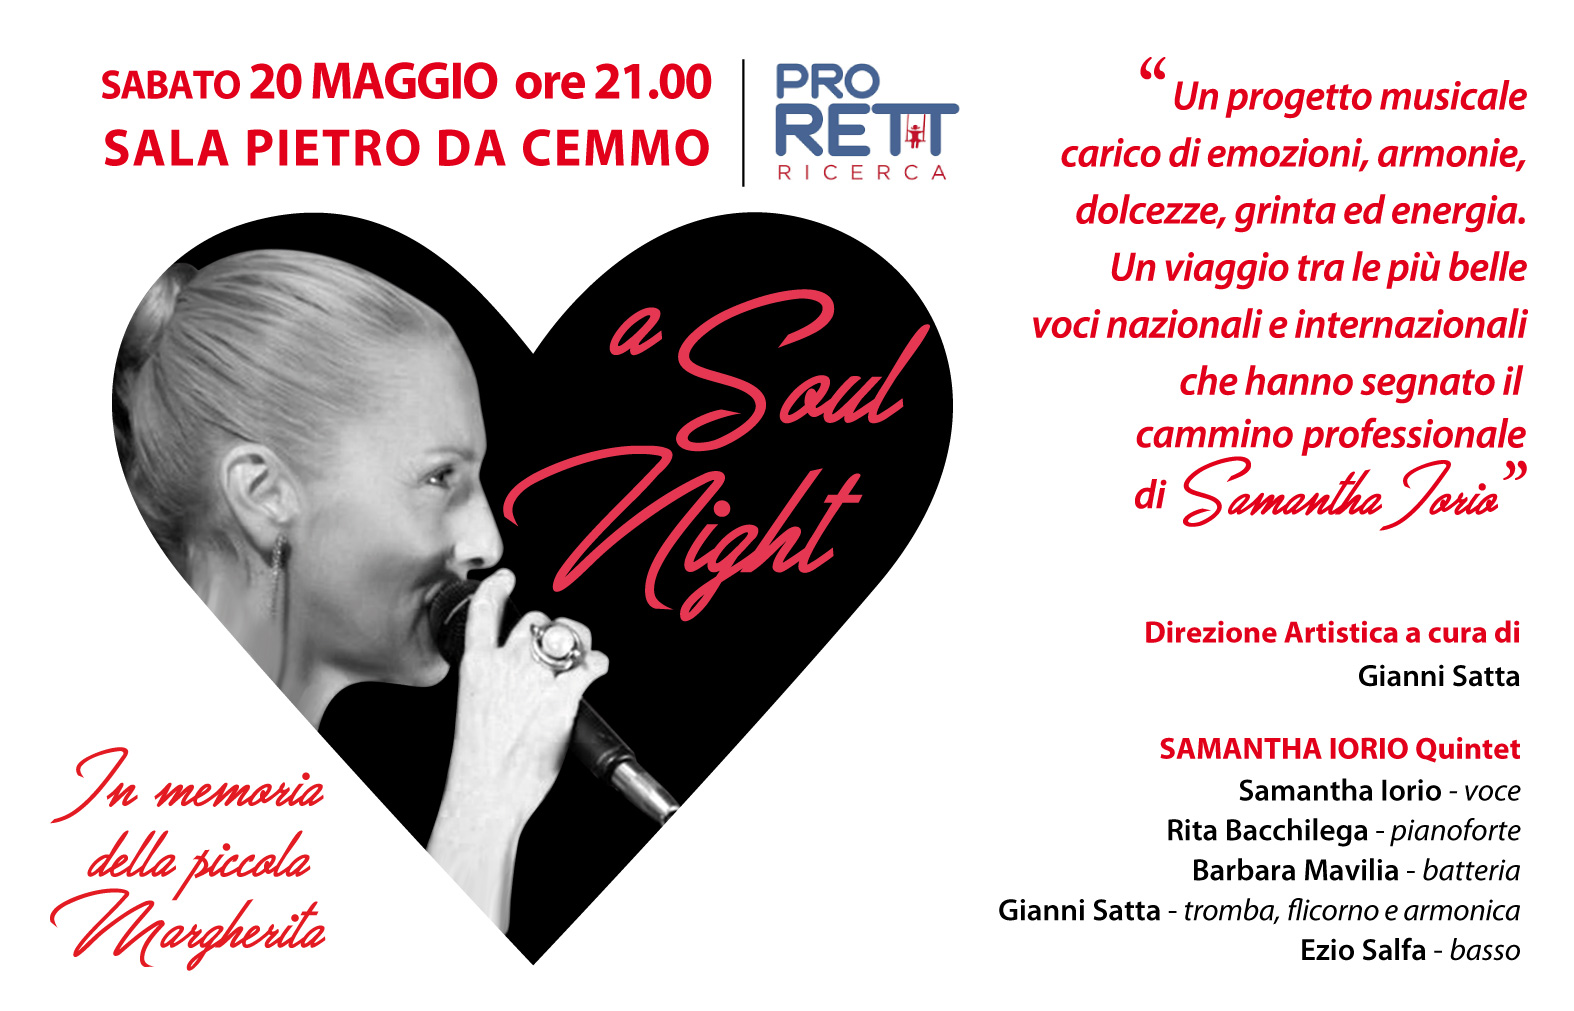 A soul night, torna a Crema Pro RETT ricerca onlus con un concerto di Samantha Iorio il 20 maggio